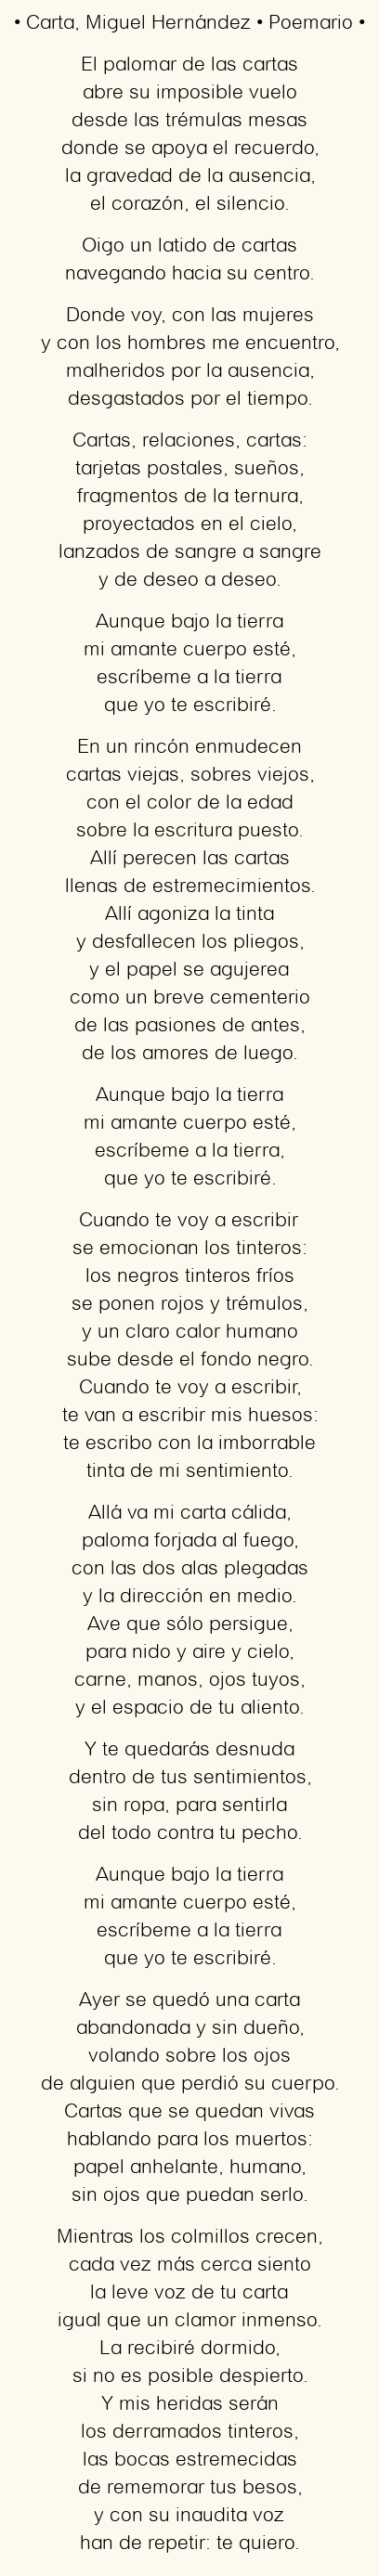 Imagen con el poema Carta, por Miguel Hernández